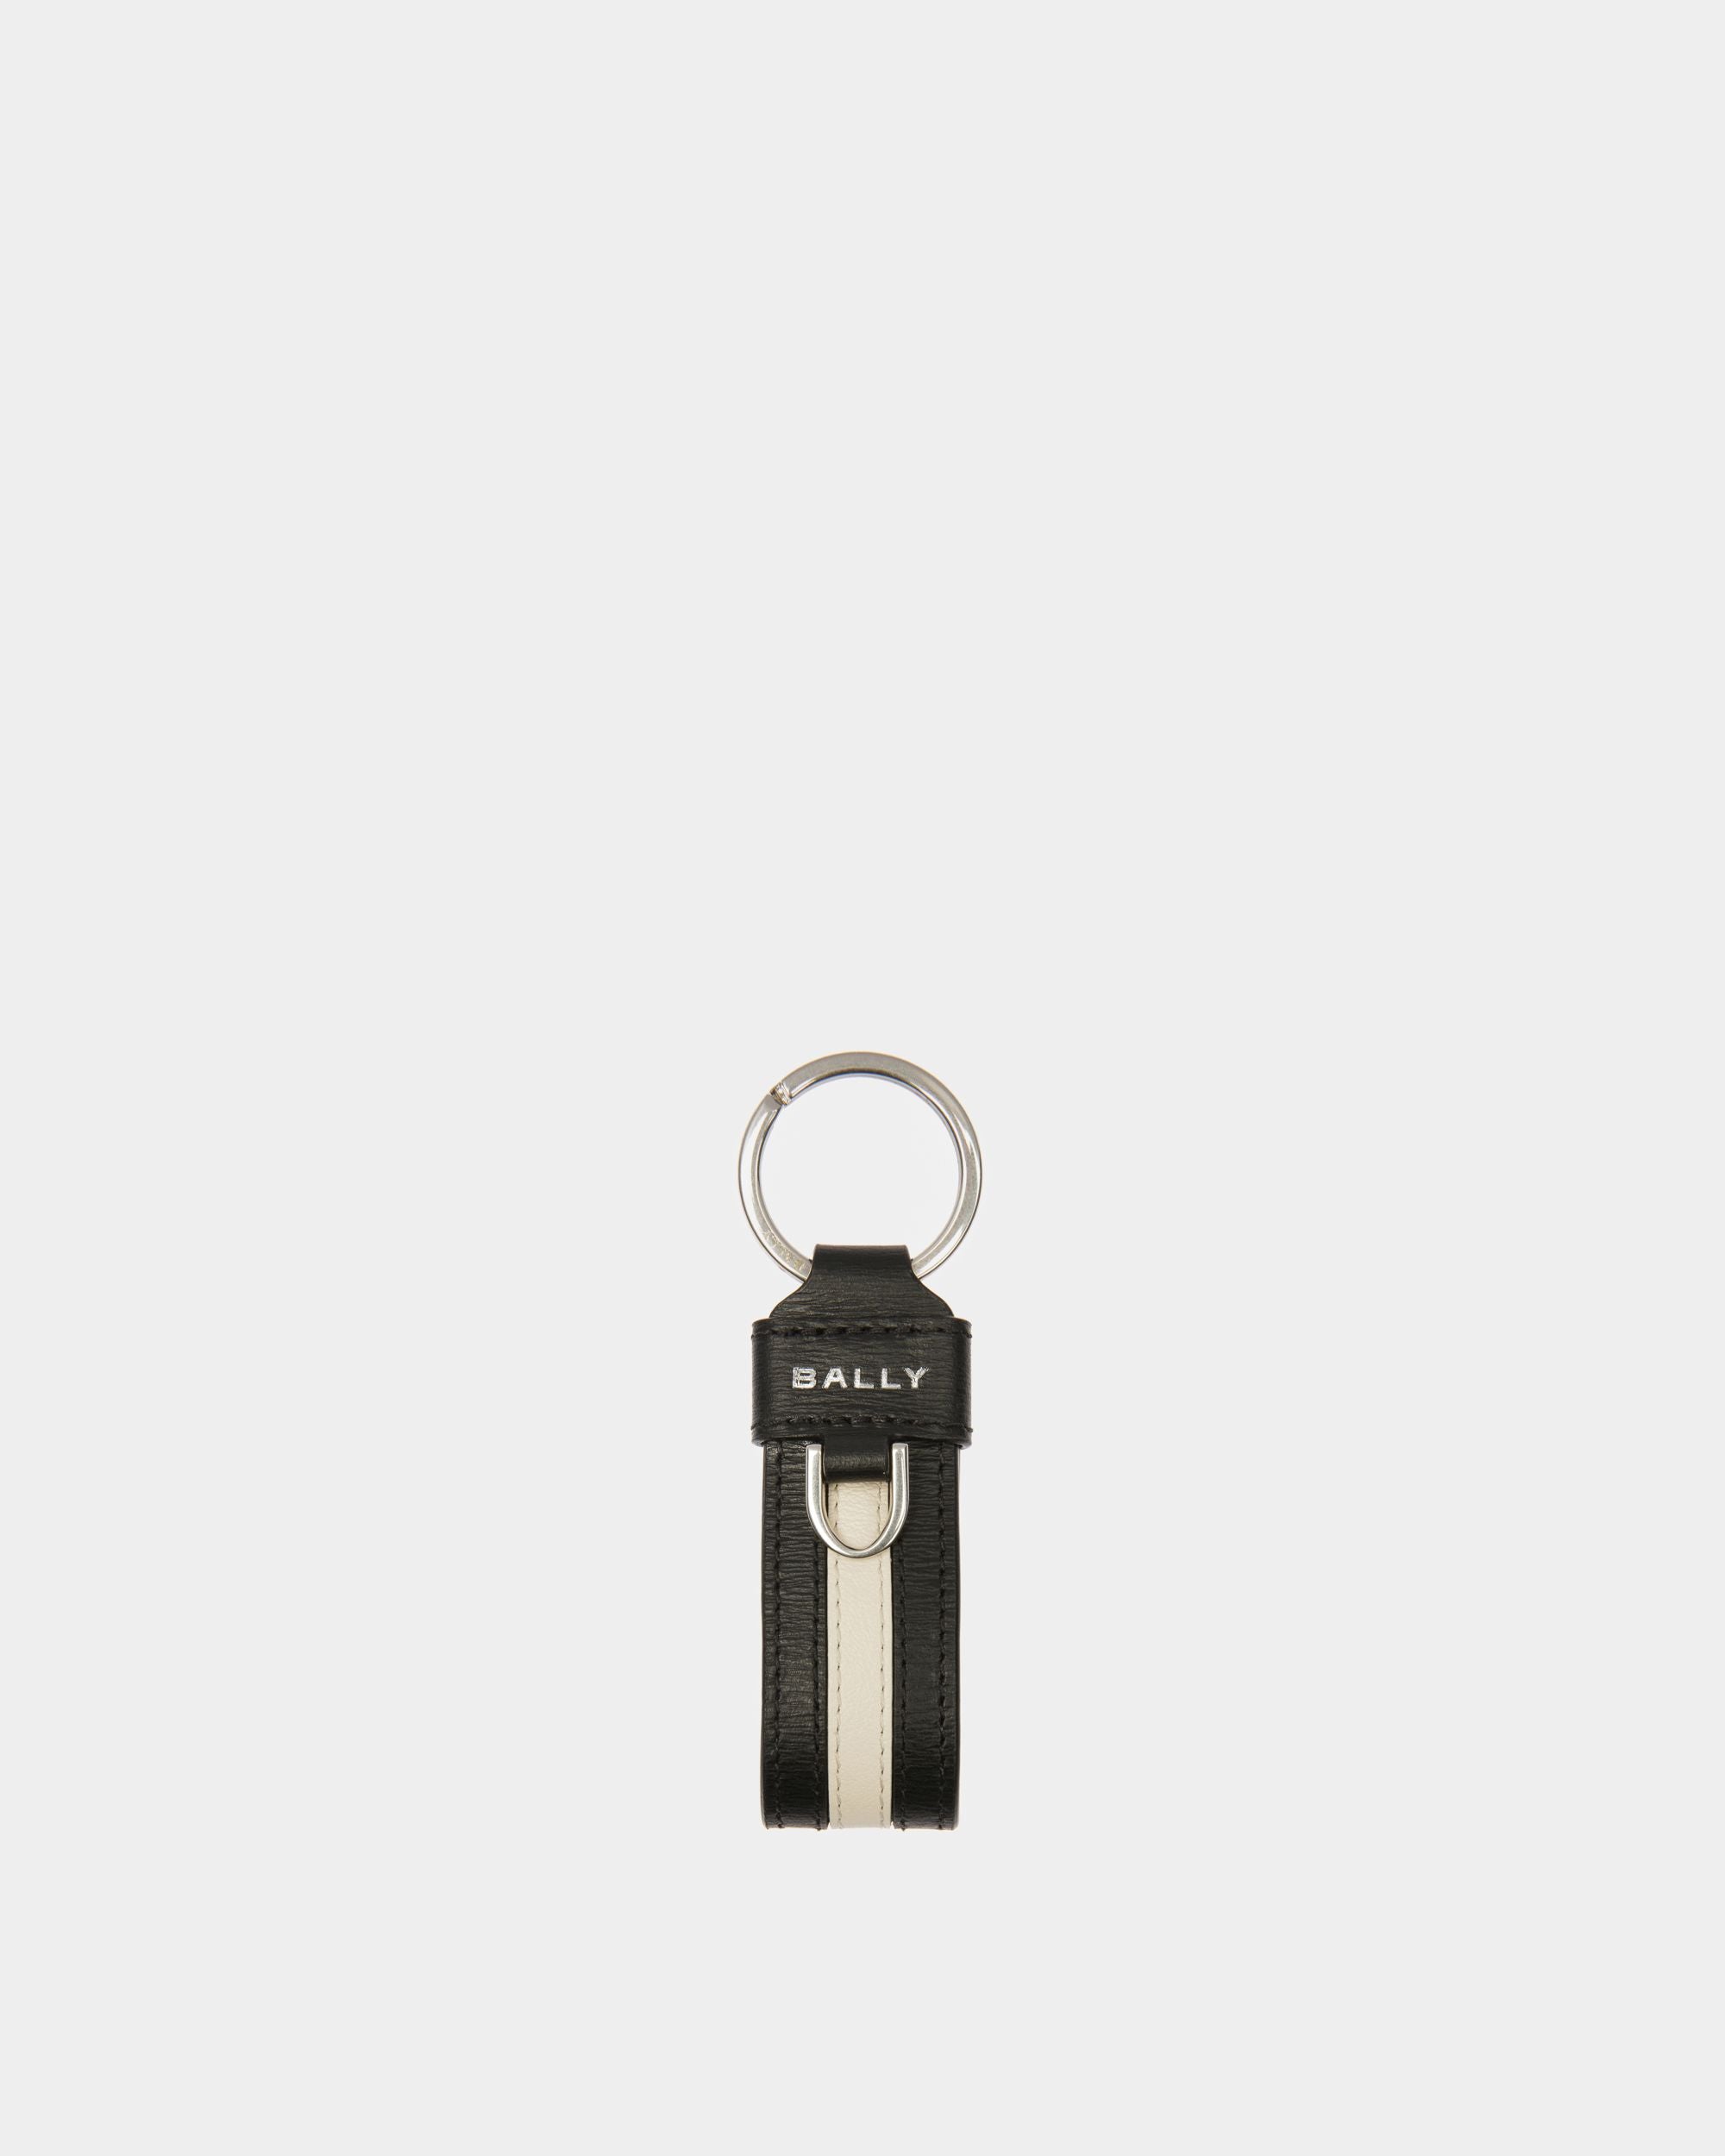 Porte-clés Ribbon | Porte-cartes pour homme | Cuir noir | Bally | Still Life Devant